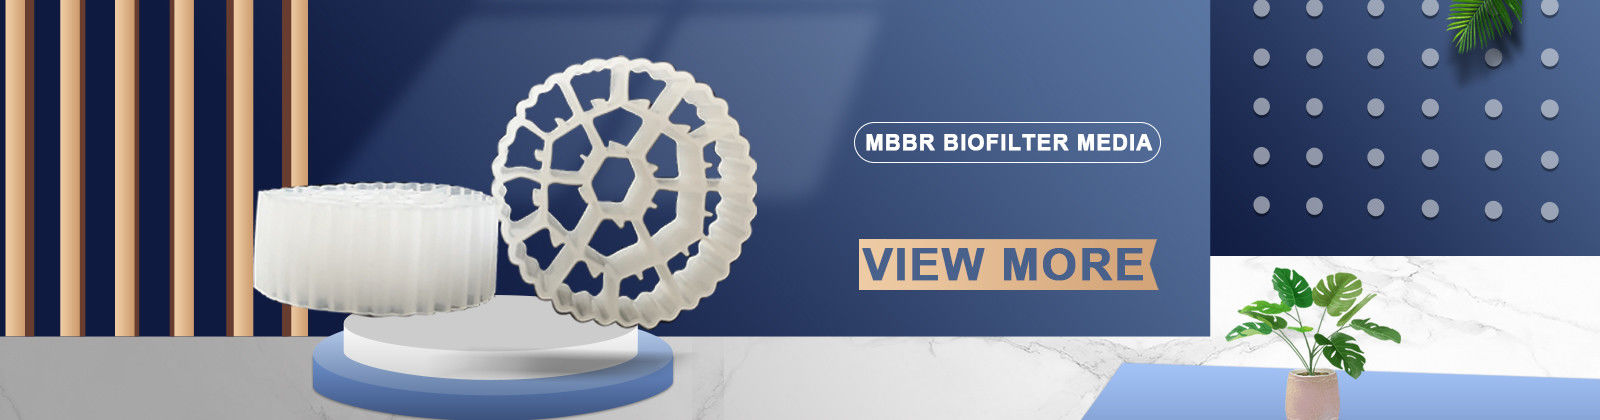 MBBR Media Biofilter